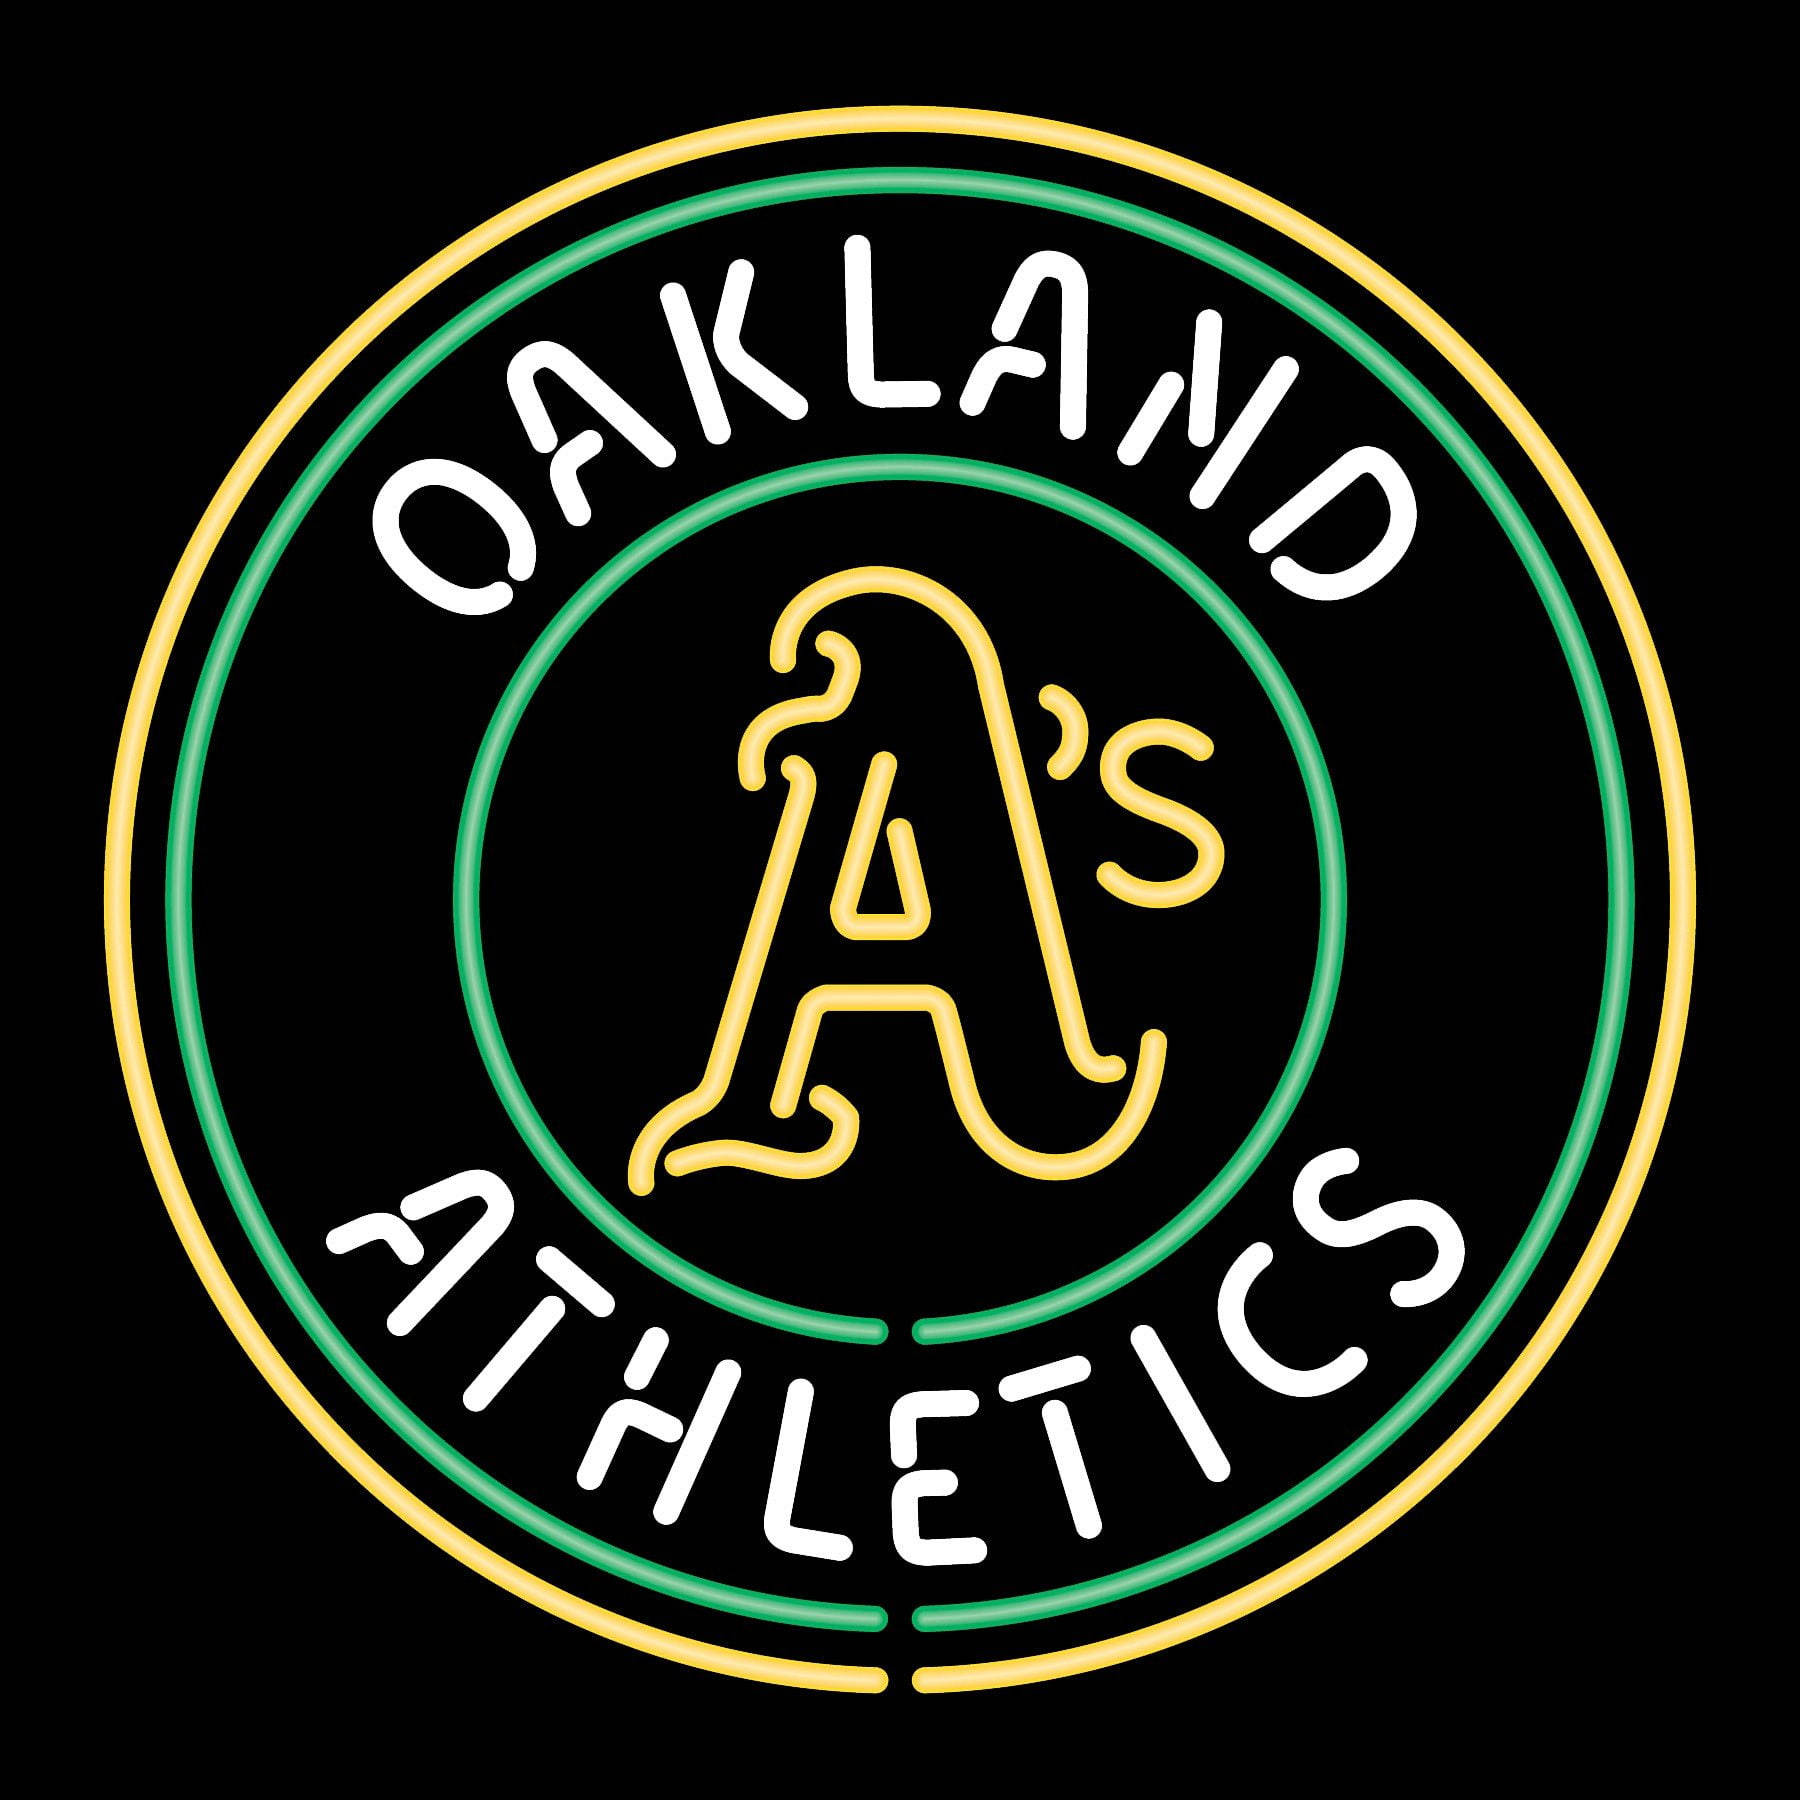 Papel De Parede Do Oakland Athletics Em Neon. Papel de Parede